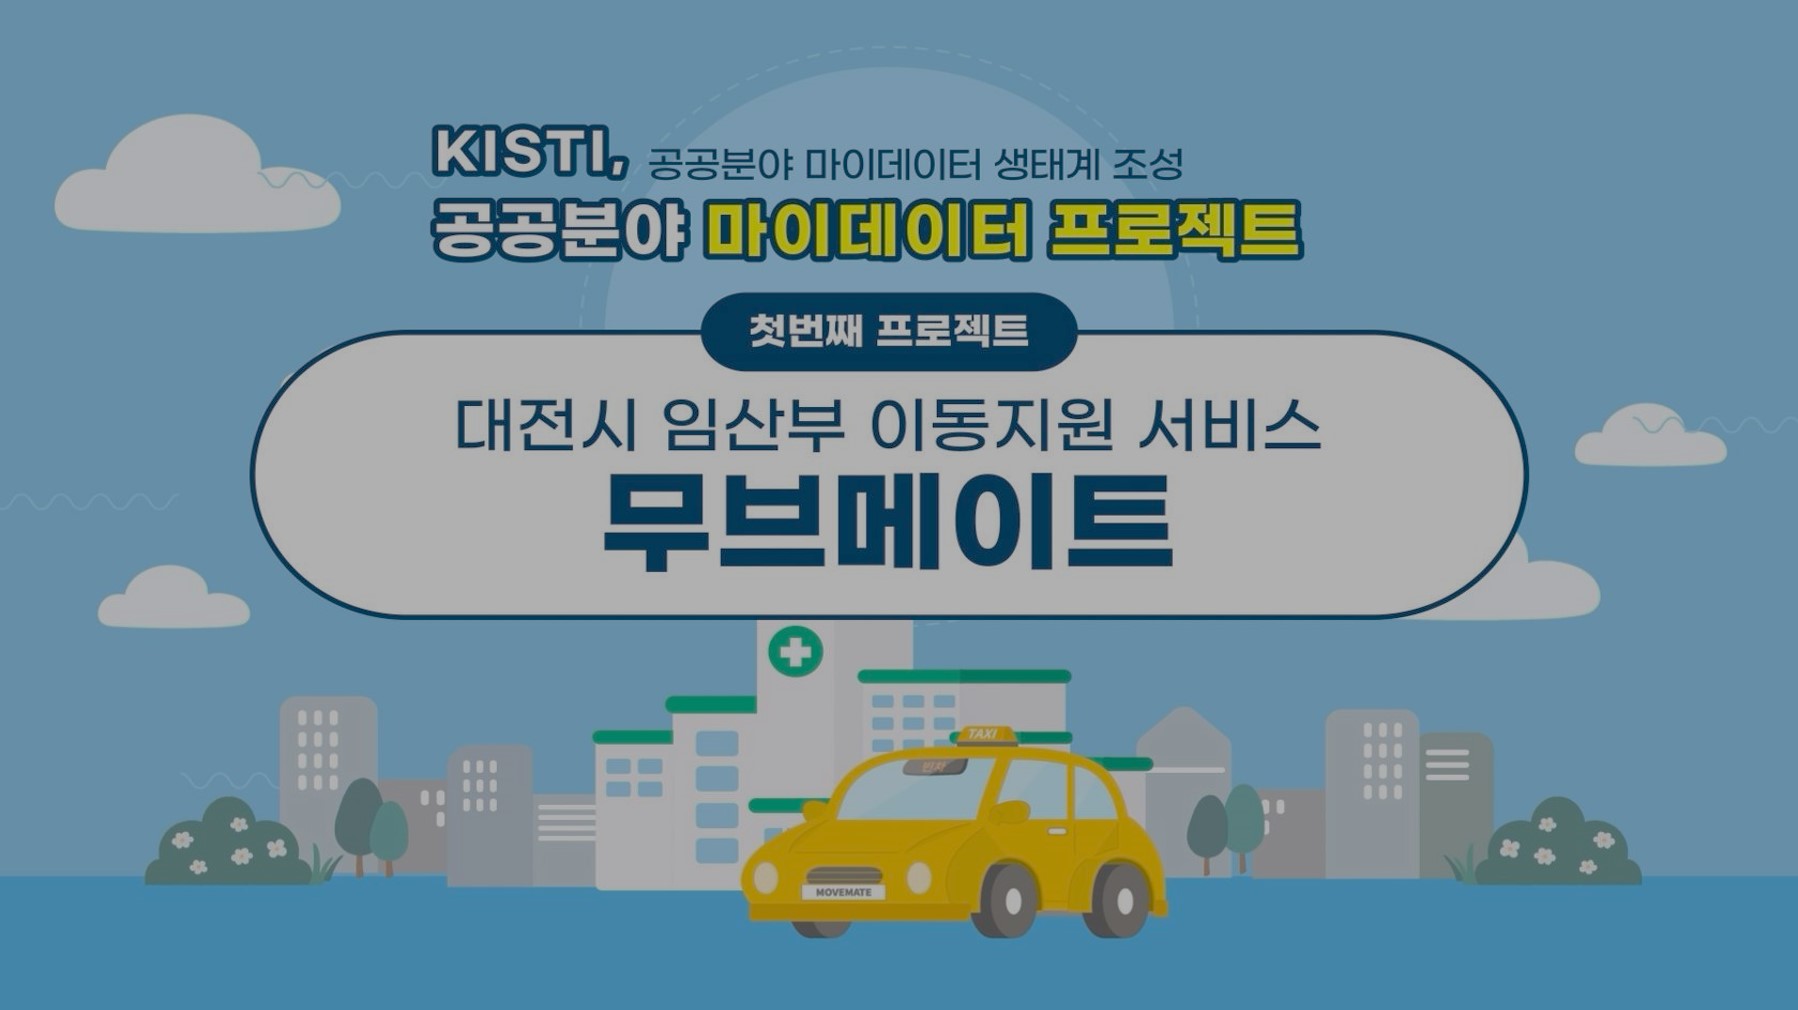 대전교통약자이동지원센터 무브메이트 홍보영상 클릭